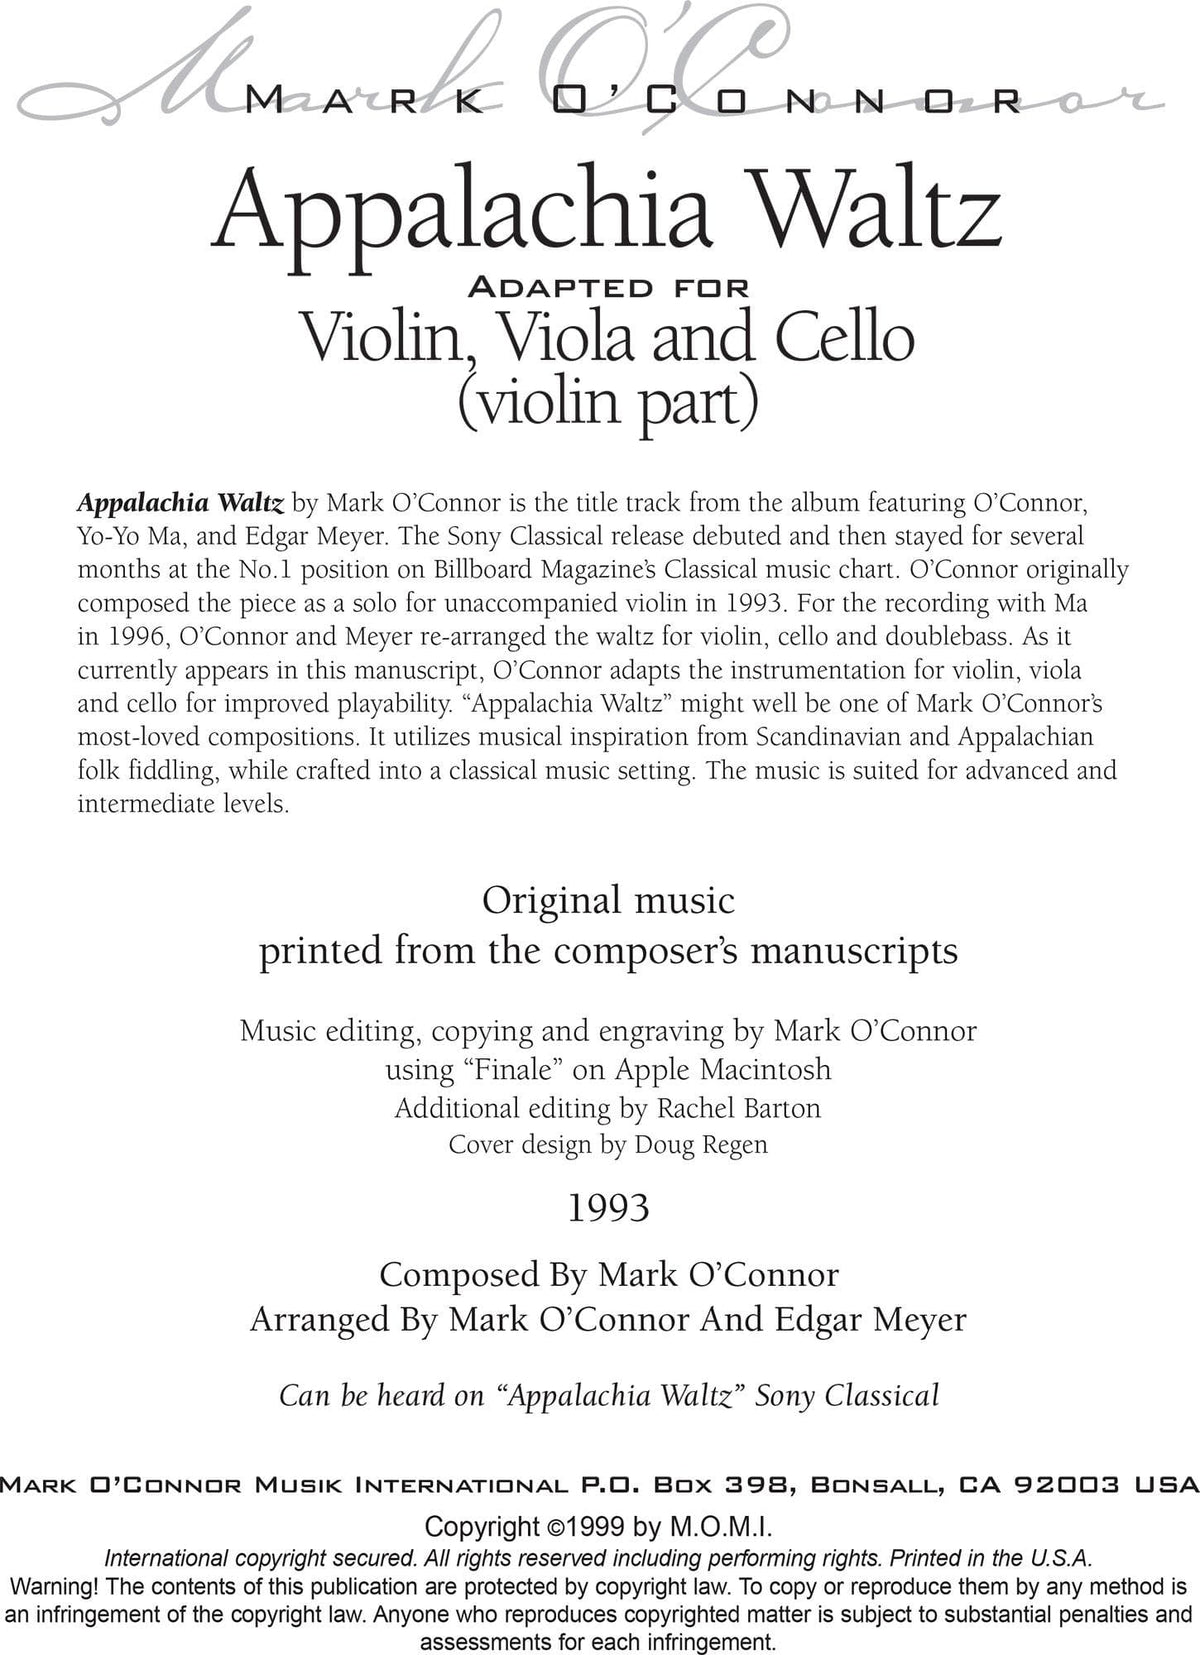 O'Connor, Mark - Appalachia Waltz for Violin, Viola, and Cello - Violin - Digital Download